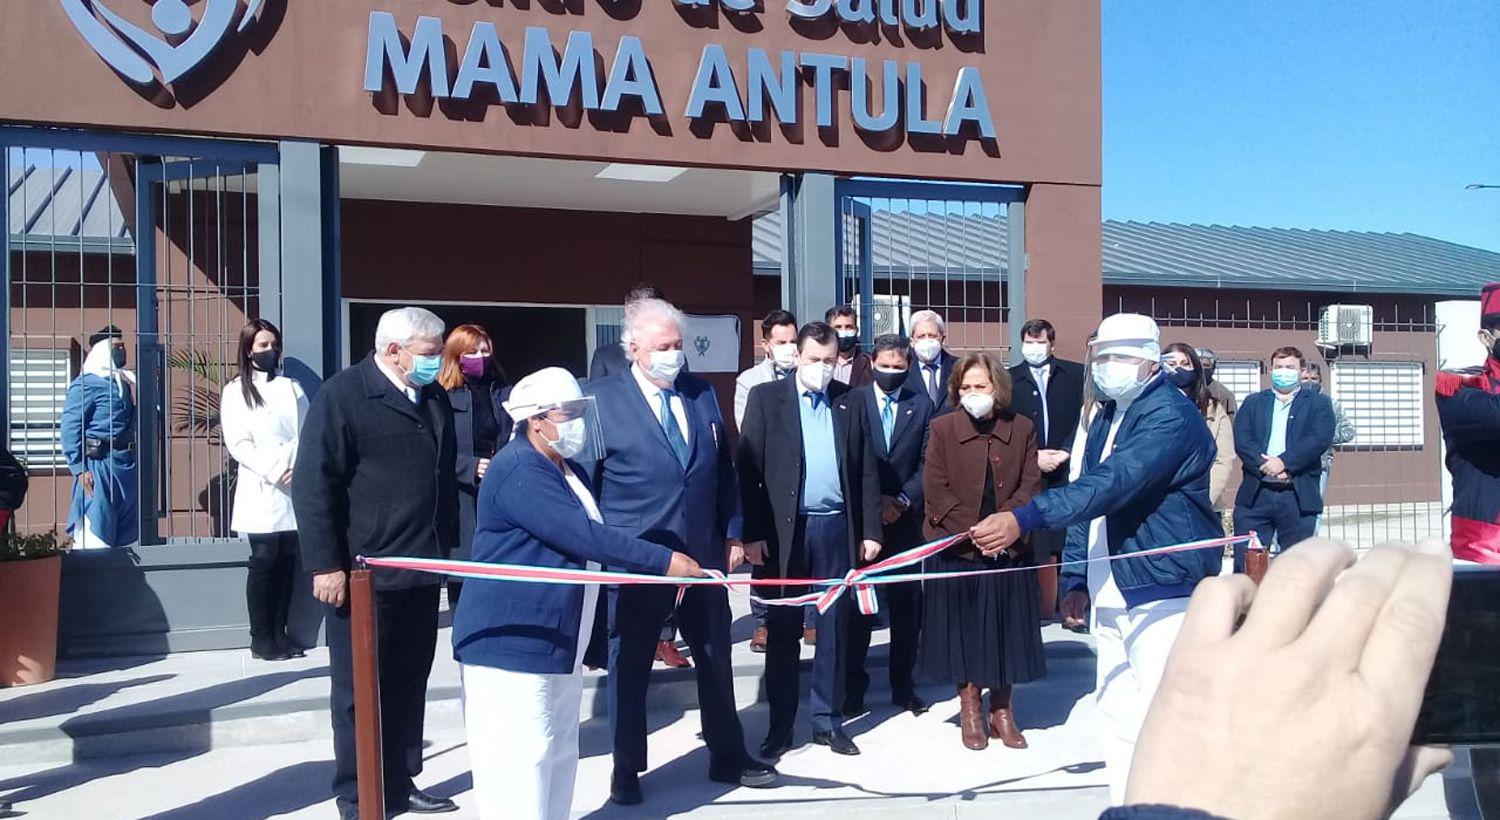 Zamora y Gineacutes Gonzaacutelez Garciacutea habilitaron el Hospital Mama Antula en el sur capitalino